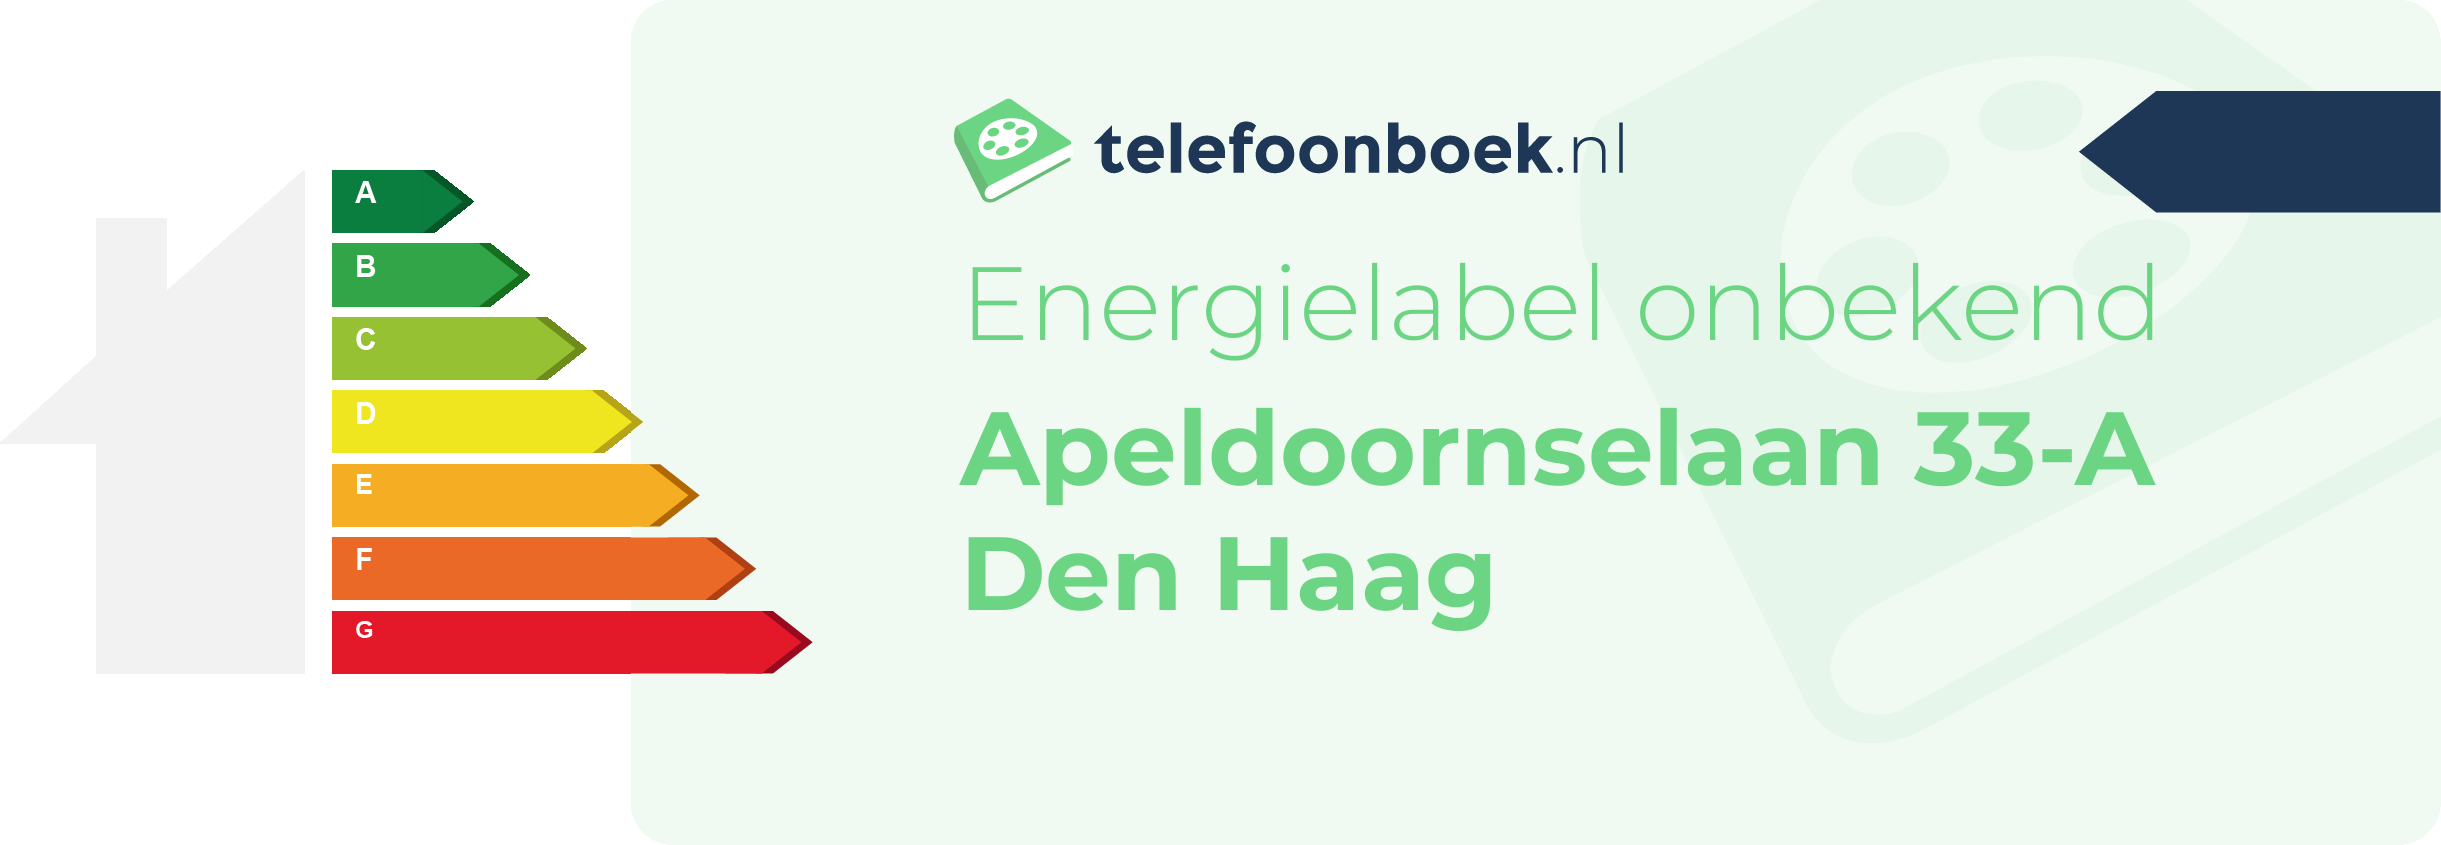 Energielabel Apeldoornselaan 33-A Den Haag